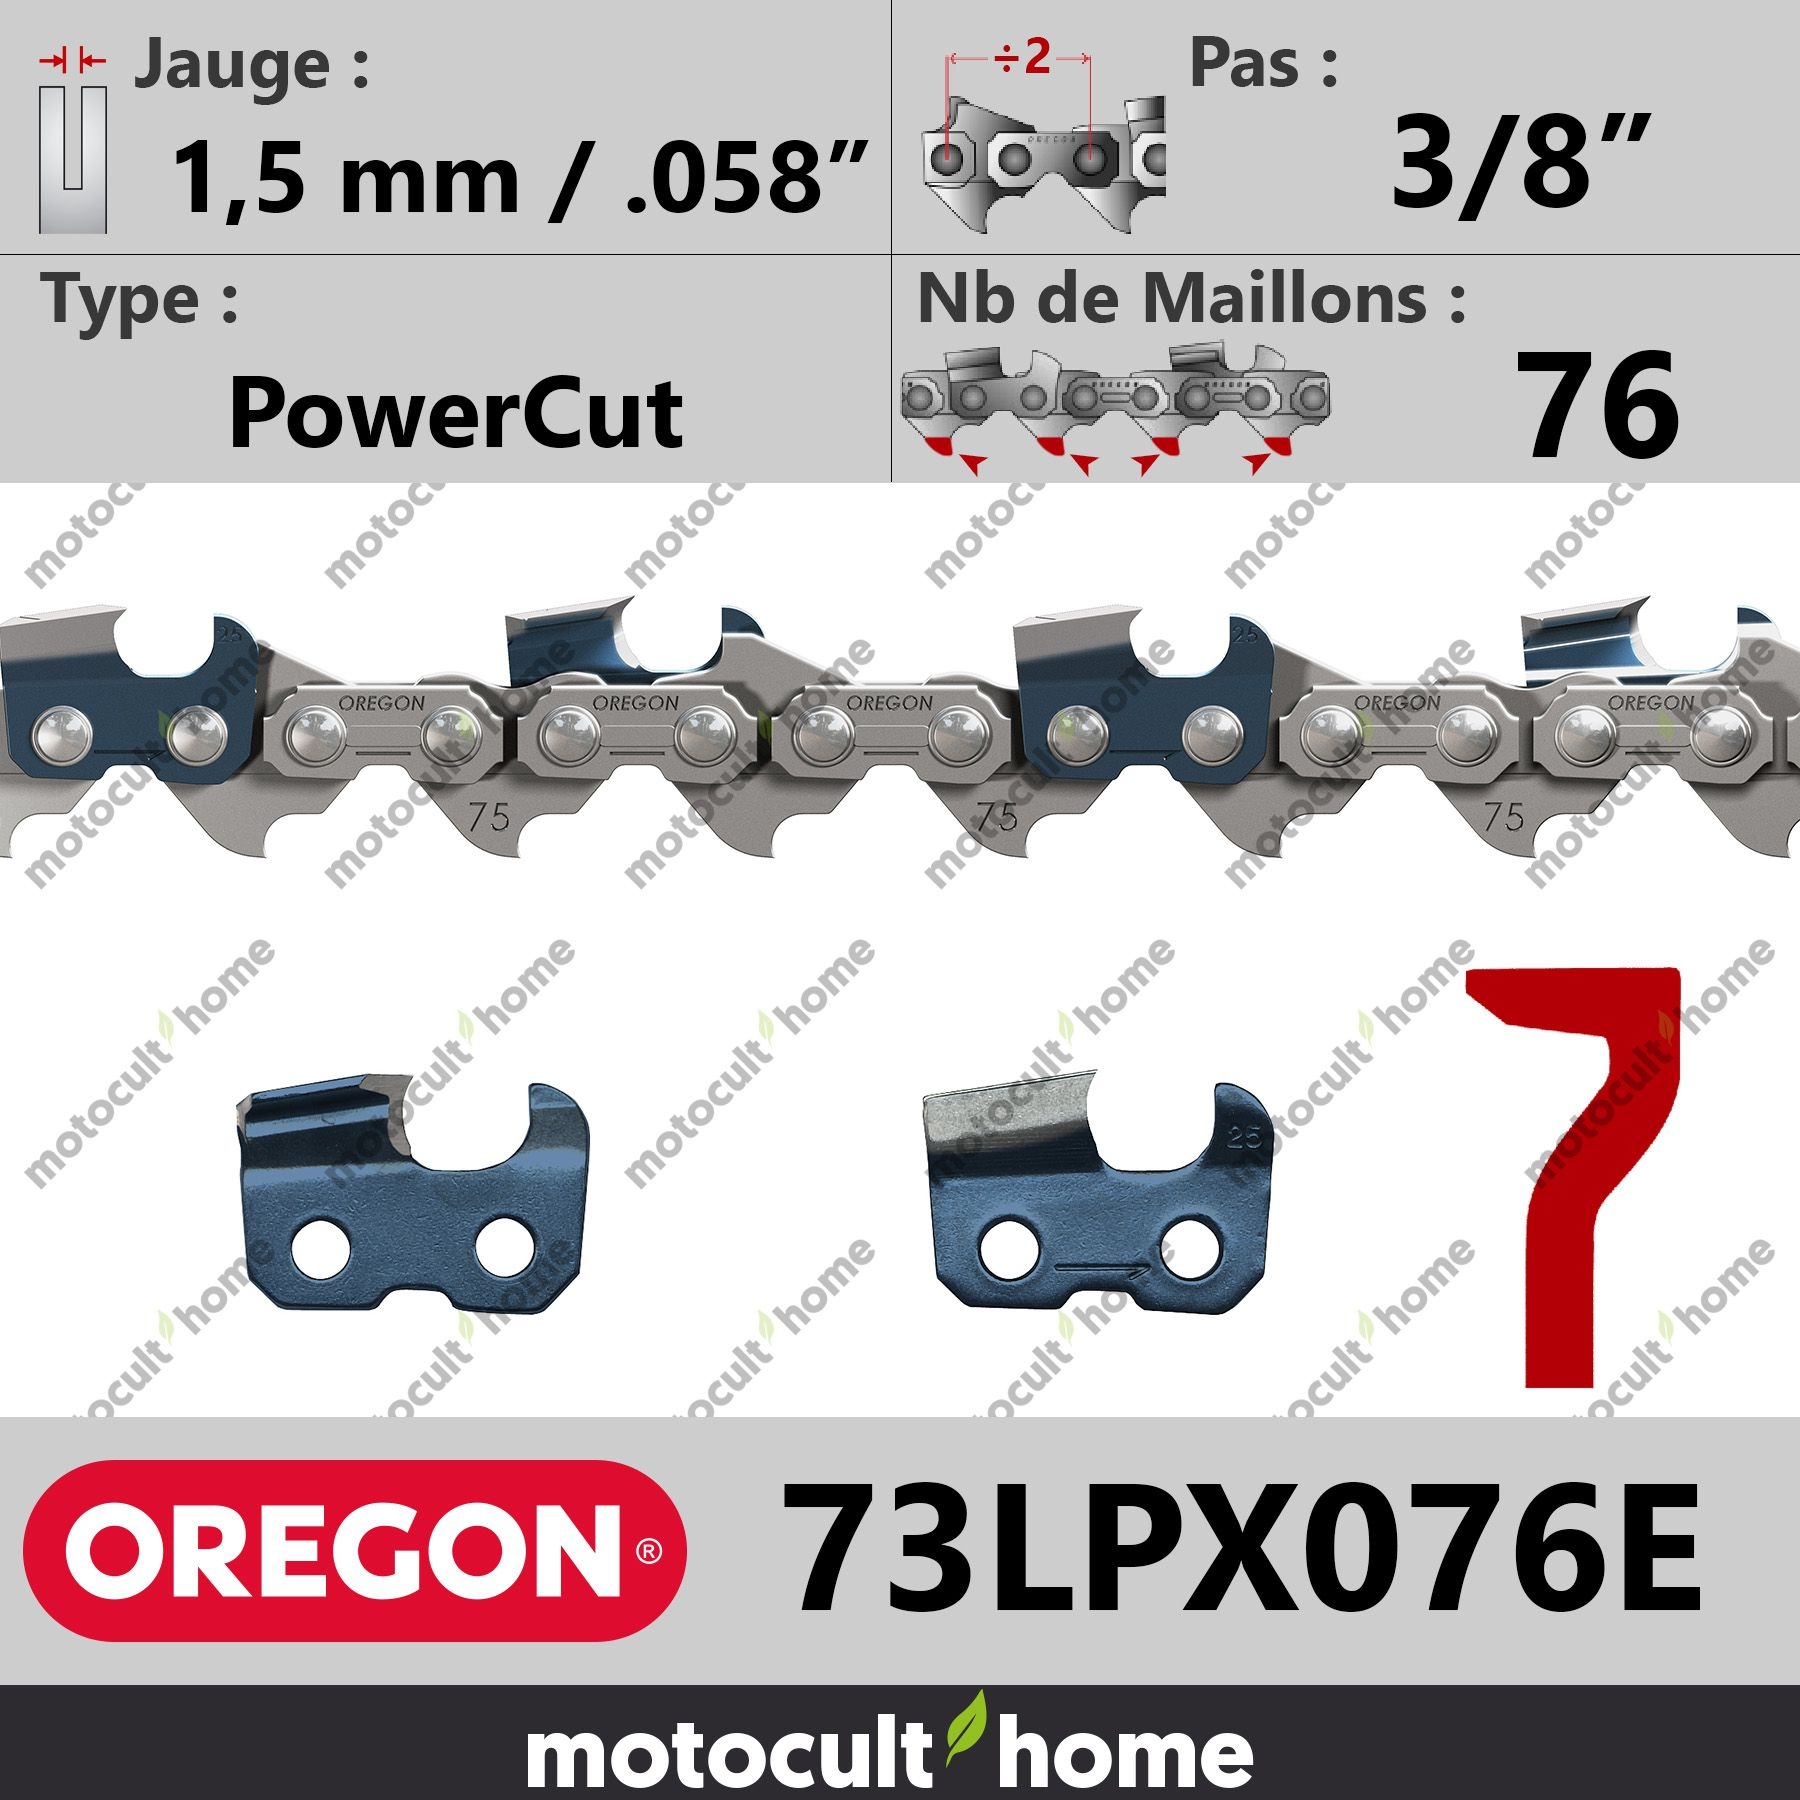 Chaîne de Tronçonneuse Oregon 73LPX076E PowerCut 3/8 1,5 mm 76